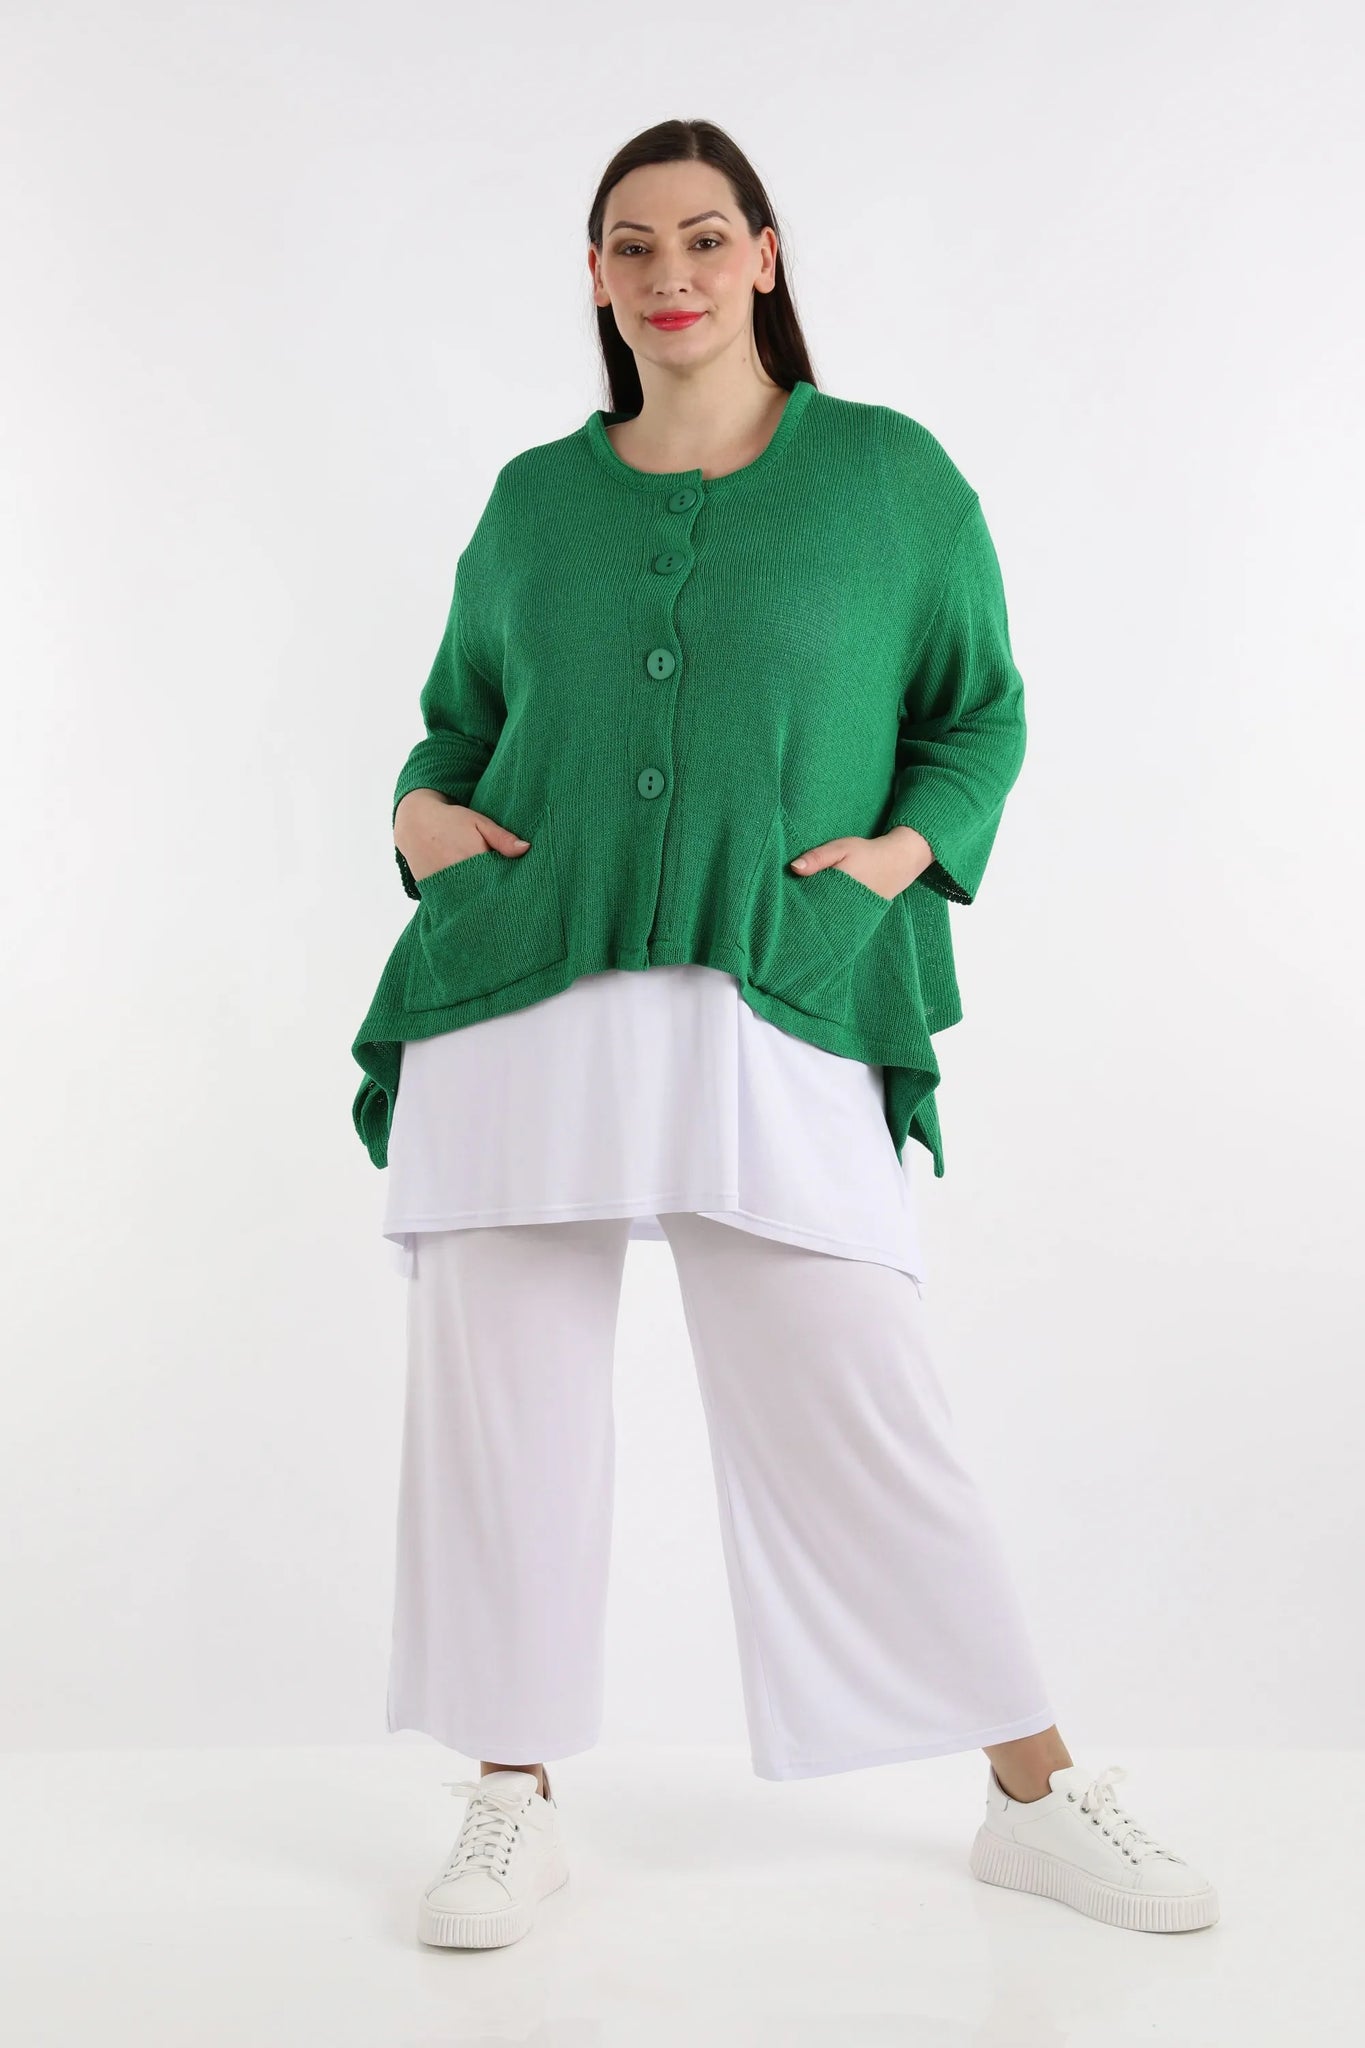 A-Form Jacke von AKH Fashion aus Baumwolle, 1110.00118, Smaragardgrün, Unifarben, Schick